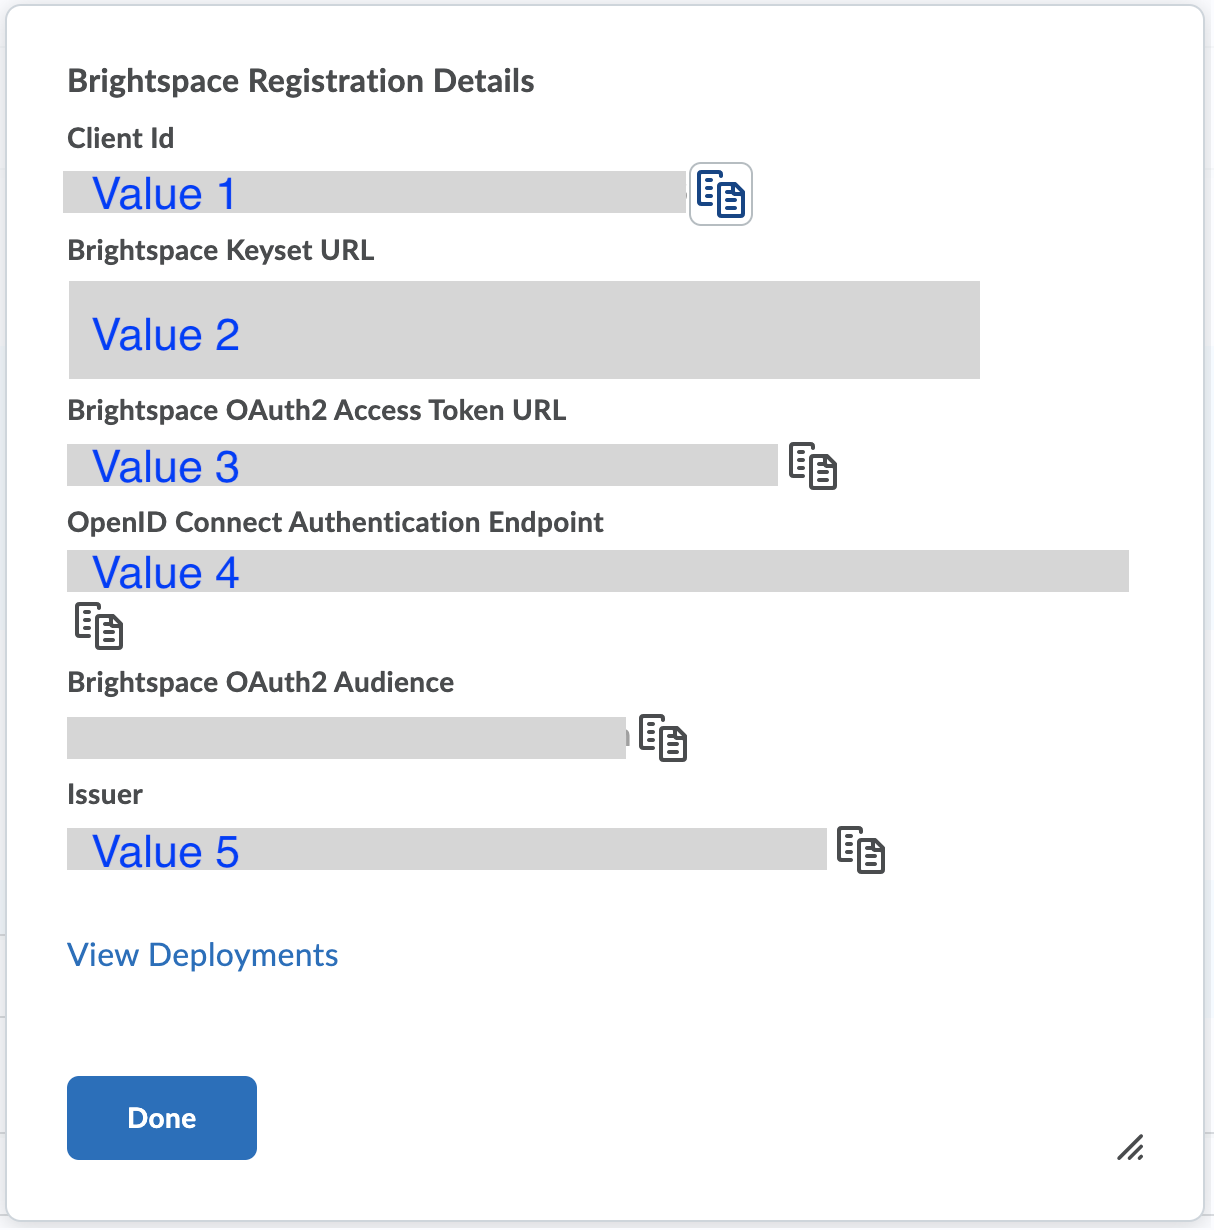 Brightspace Registration Details